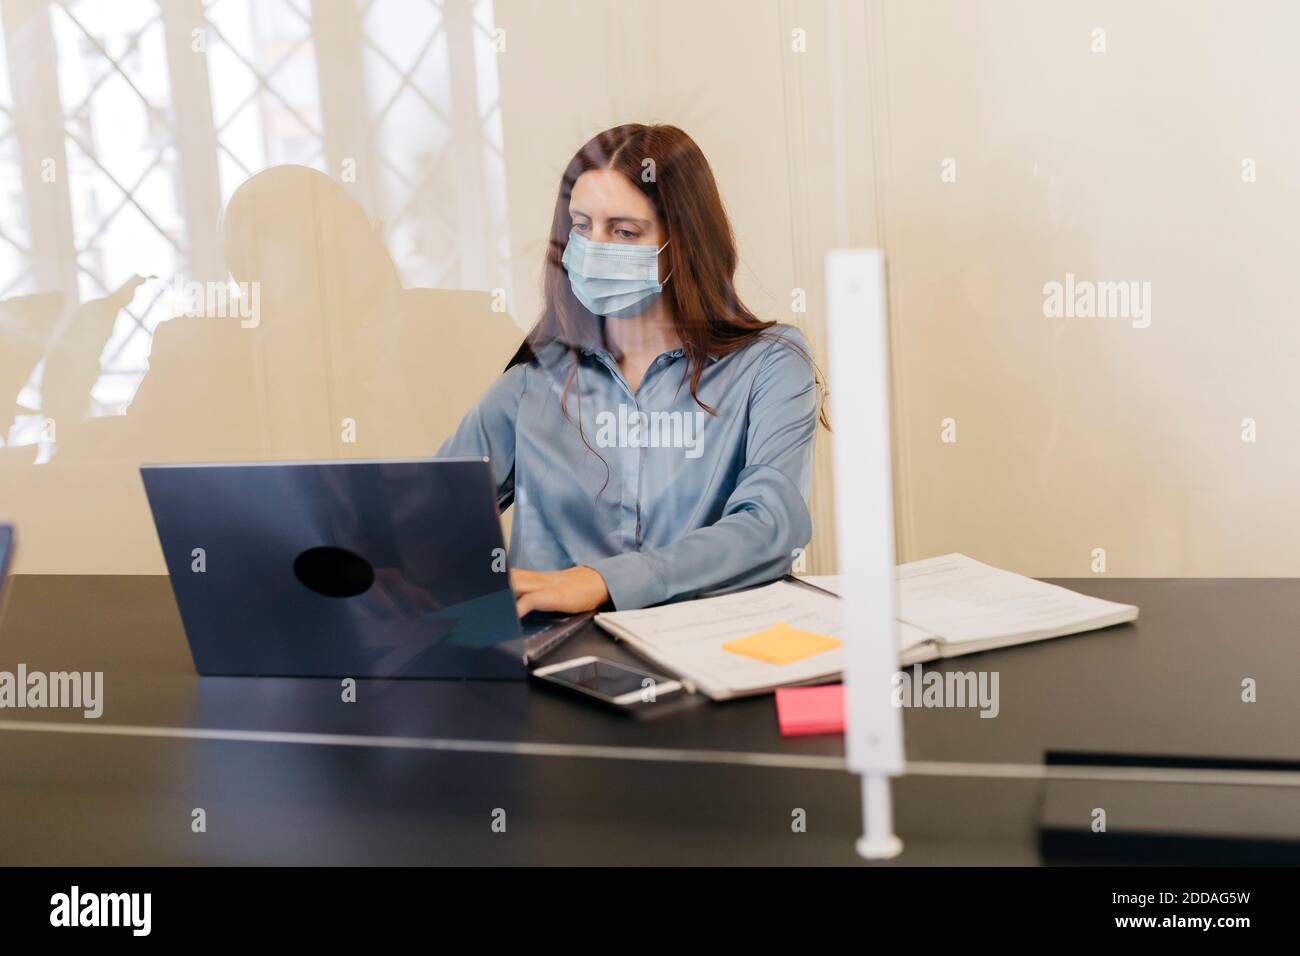 Donna imprenditore con maschera protettiva che lavora sul laptop sul luogo di lavoro vista attraverso il vetro del finestrino Foto Stock